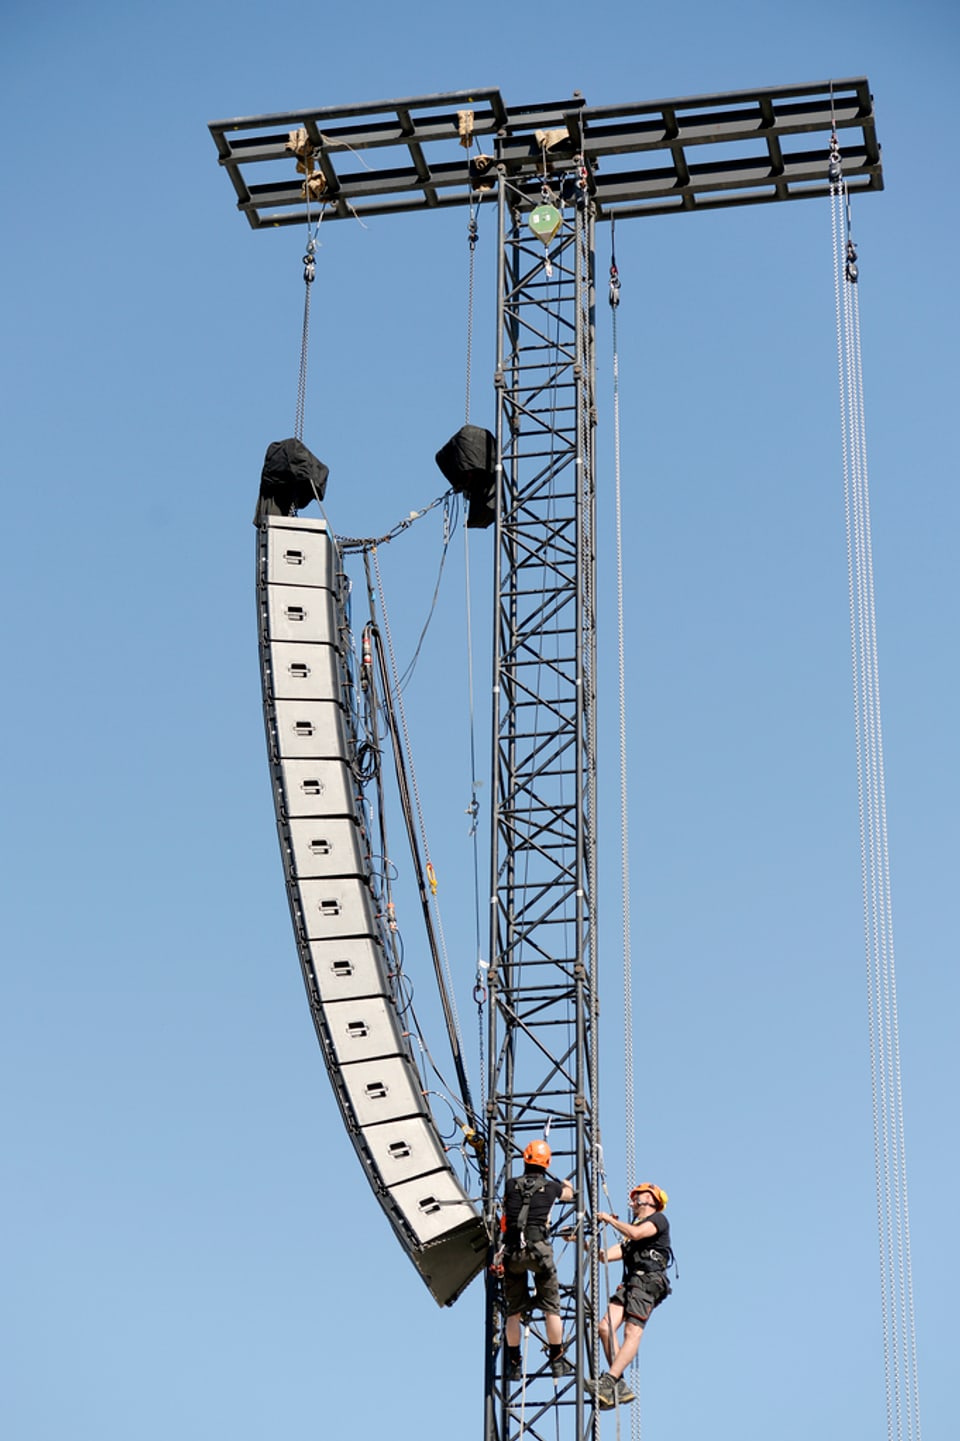 zwei Menschen klettern mit einer Lautsprecherreihe auf einem Mast herum